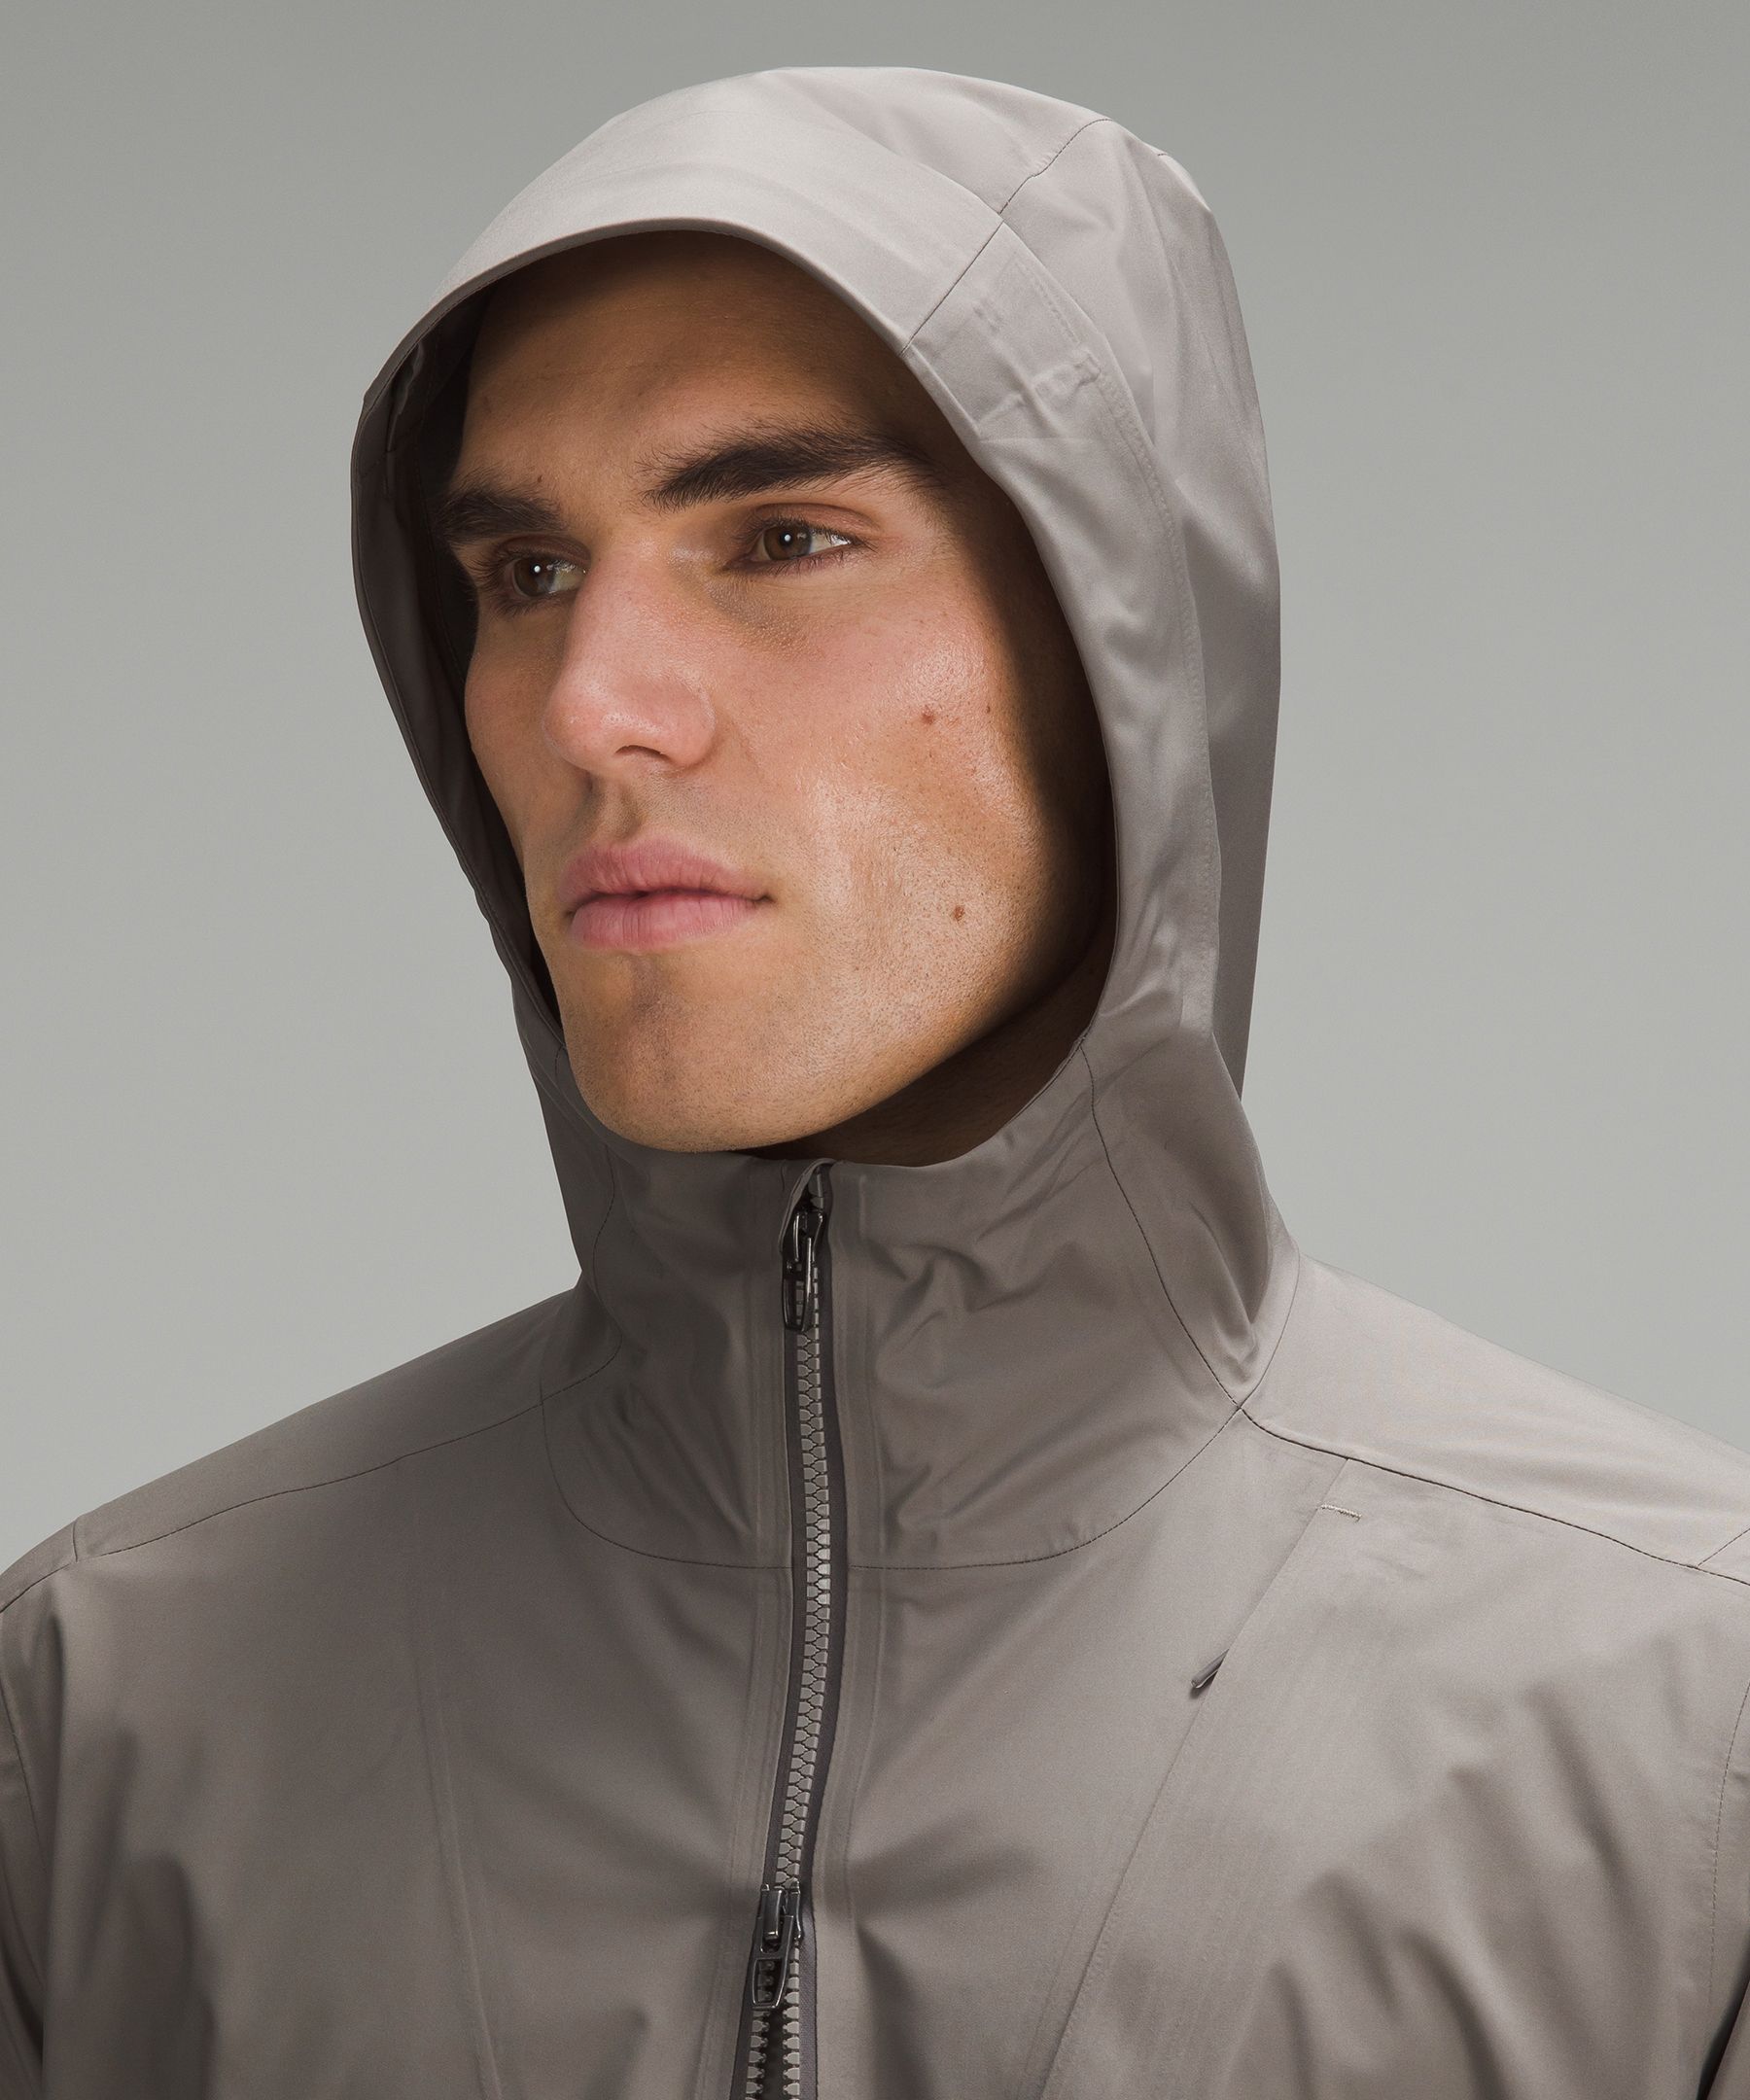 Waterproof Full-Zip Rain Jacket | Men's Coats & Jackets